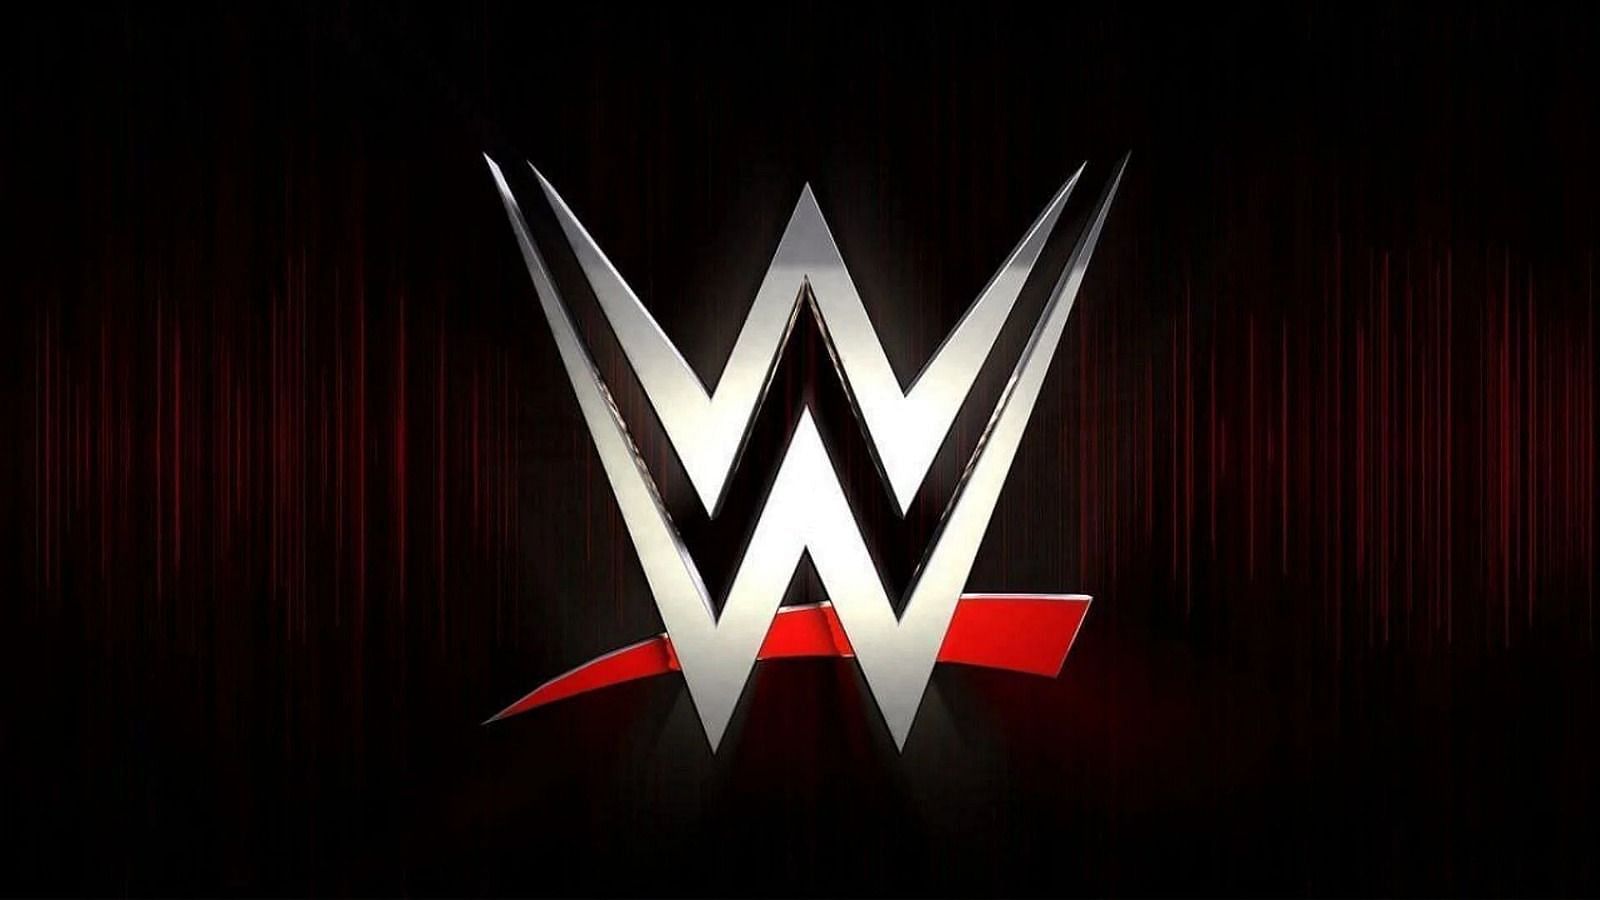  WWE सुपरस्टार ज़ेलिना वेगा ने अपने फ्यूचर को लेकर एक बड़ा बयान दिया है 